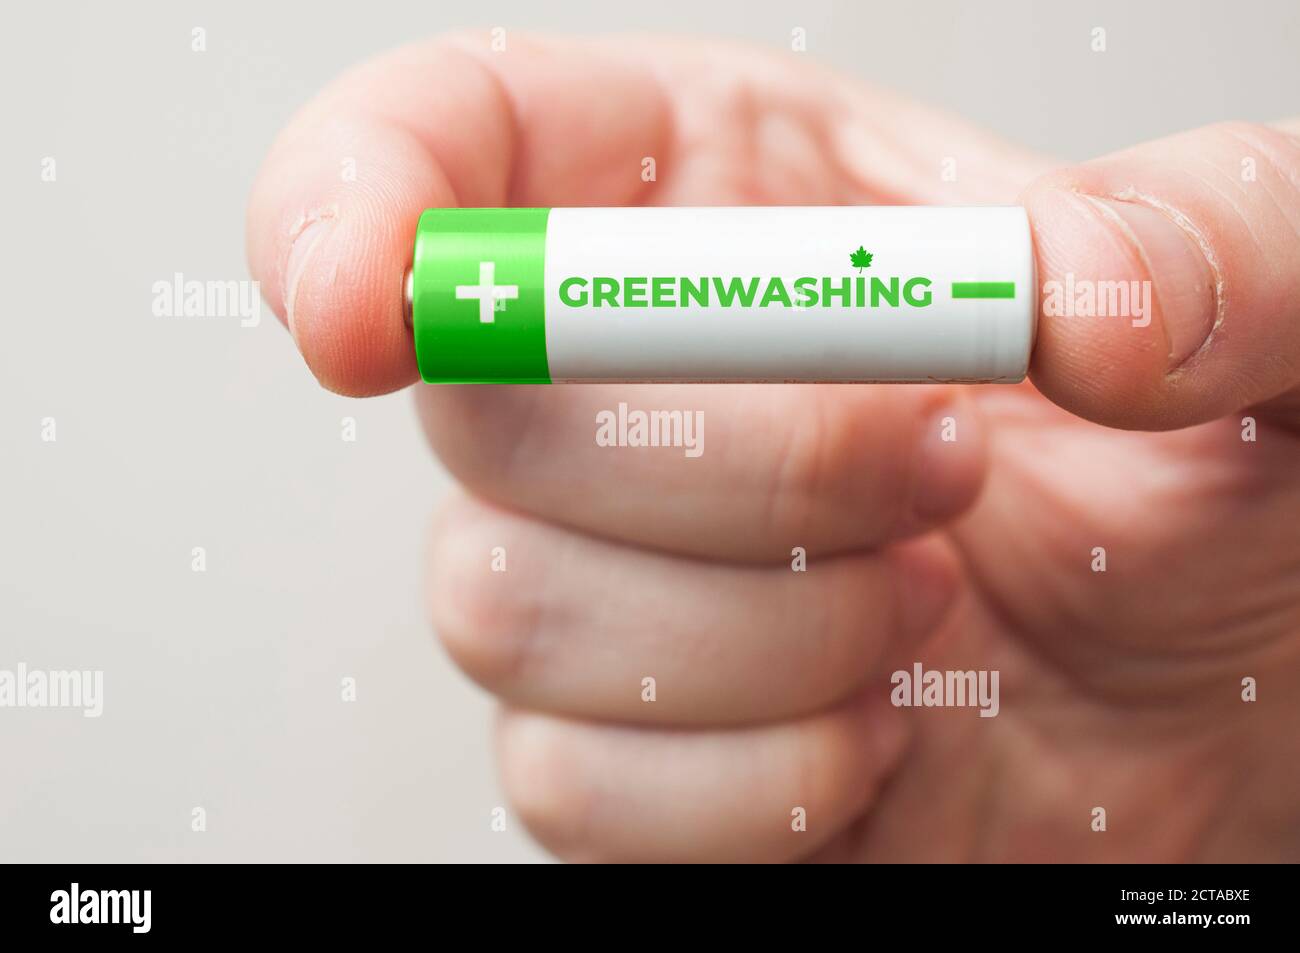 Mann hält eine grün-weiße Batterie mit dem Wort Greenwashing aufgedruckt. Greenwashing ist eine Kommunikationstechnik, die darauf abzielt, ein falsches Bild zu erstellen Stockfoto